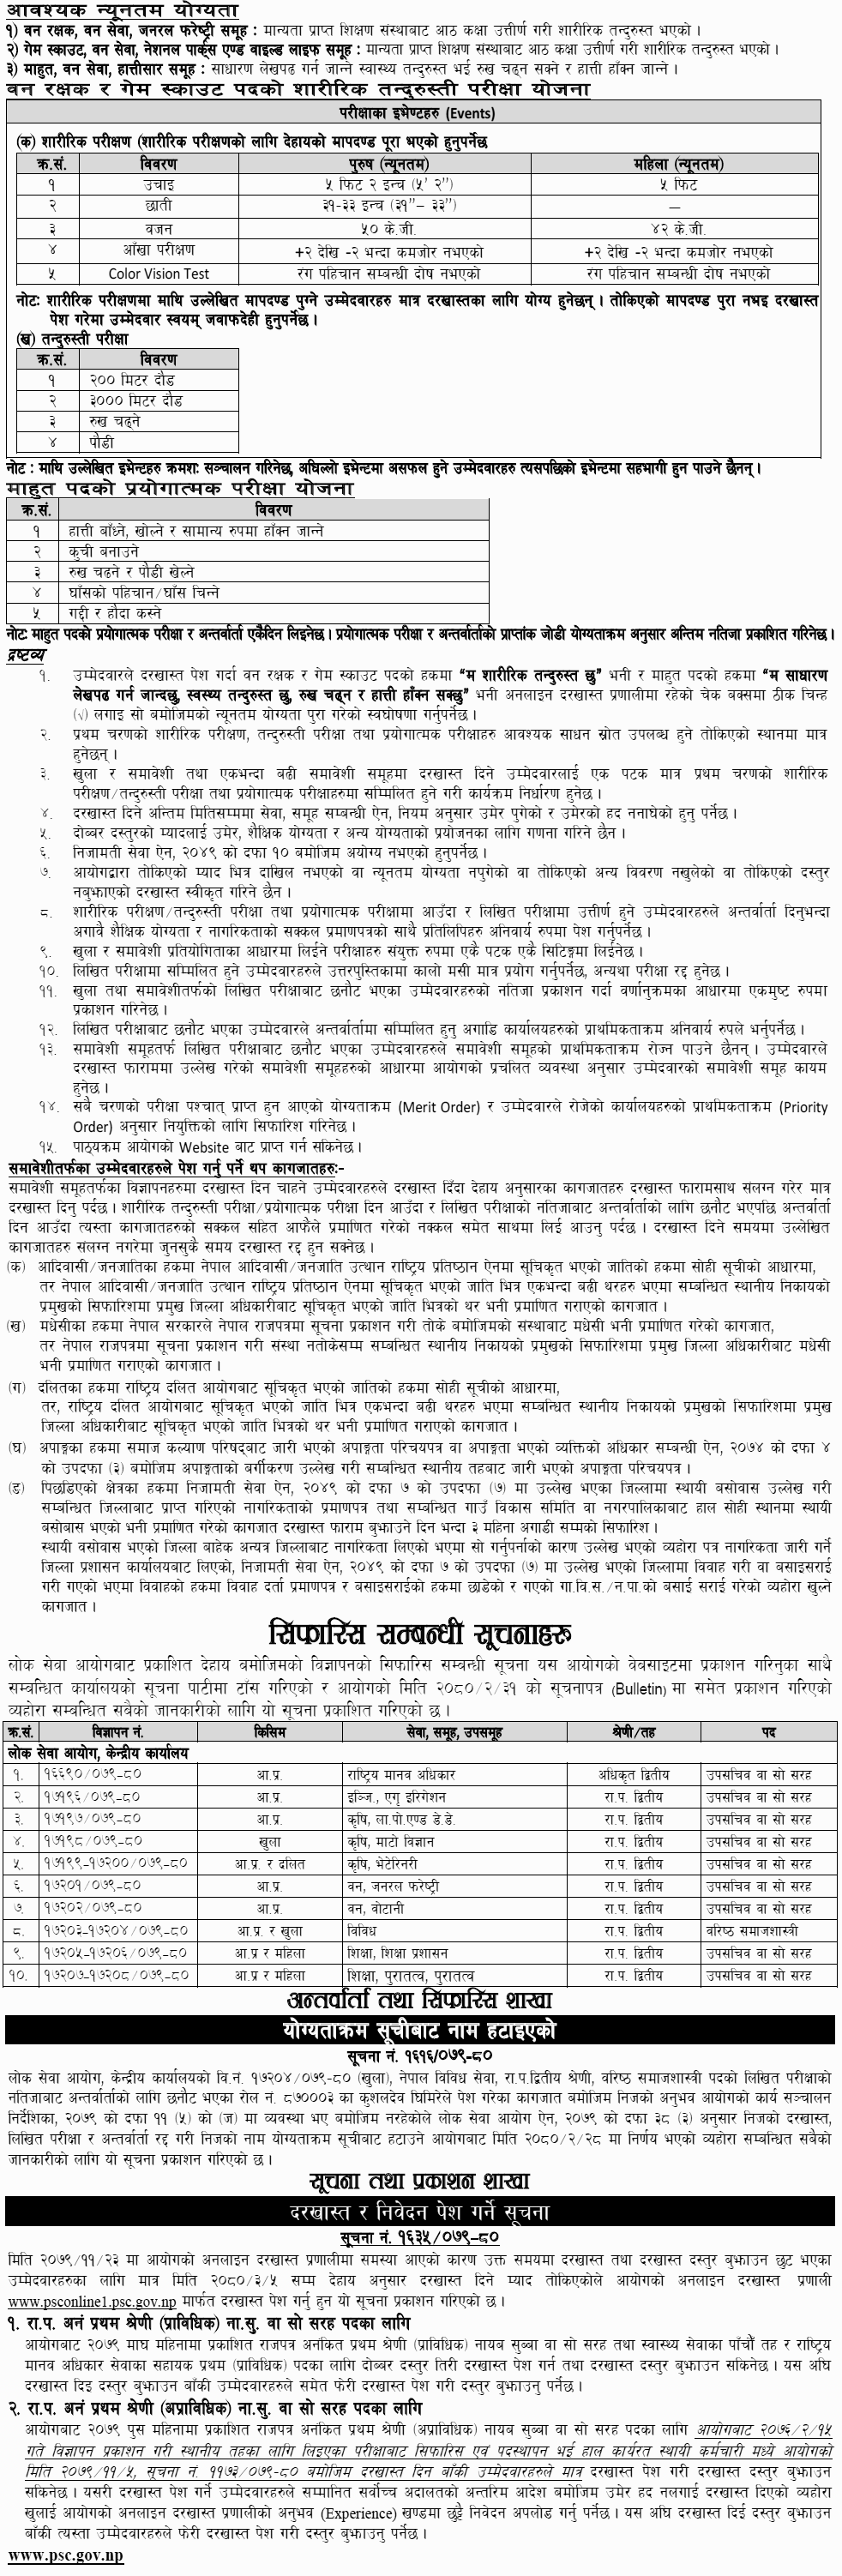 Lok Sewa Aayog Vacancy 2079-2080 (Re-Application) for Various Posts